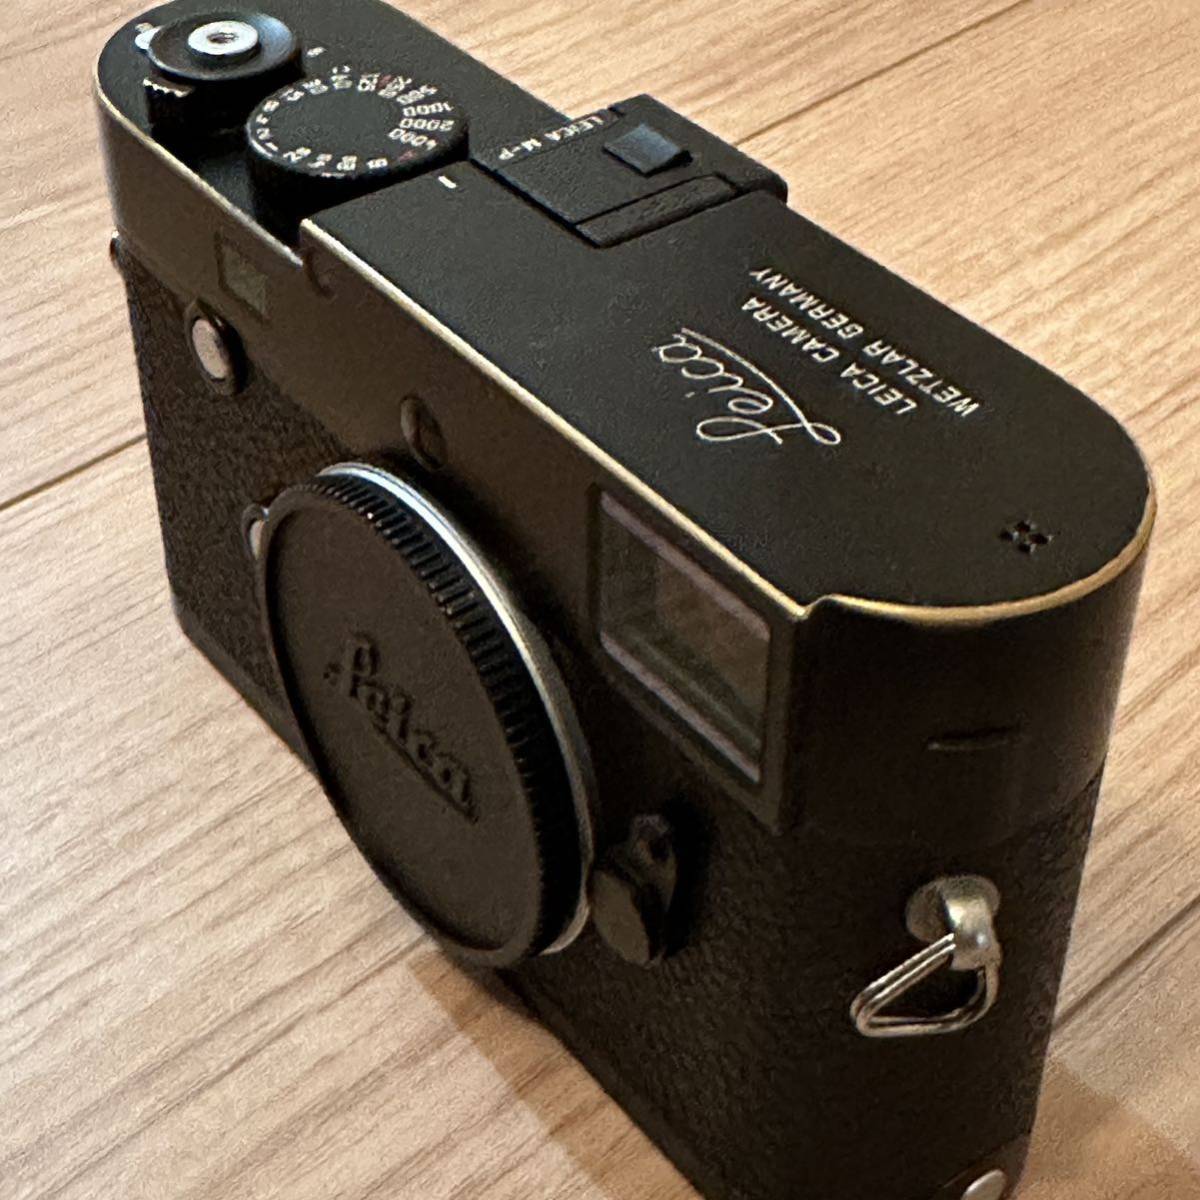 Leica(ライカ) M-P Typ240 ボディ ブラックペイント